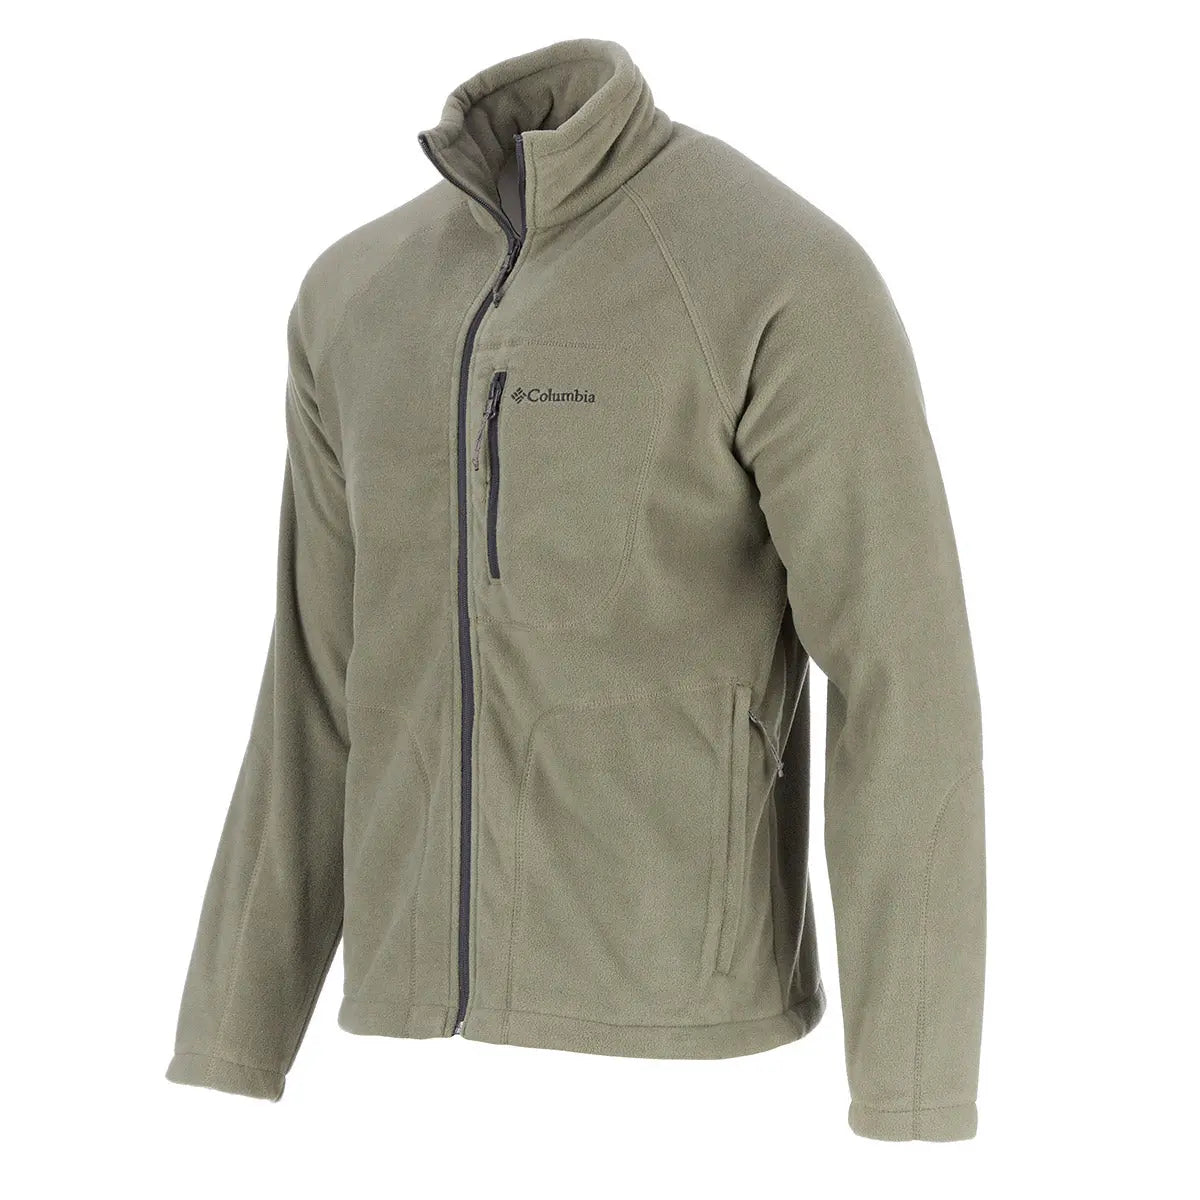 Columbia Green Fleece Full Zip Up Jacket Mens - beyond exchange